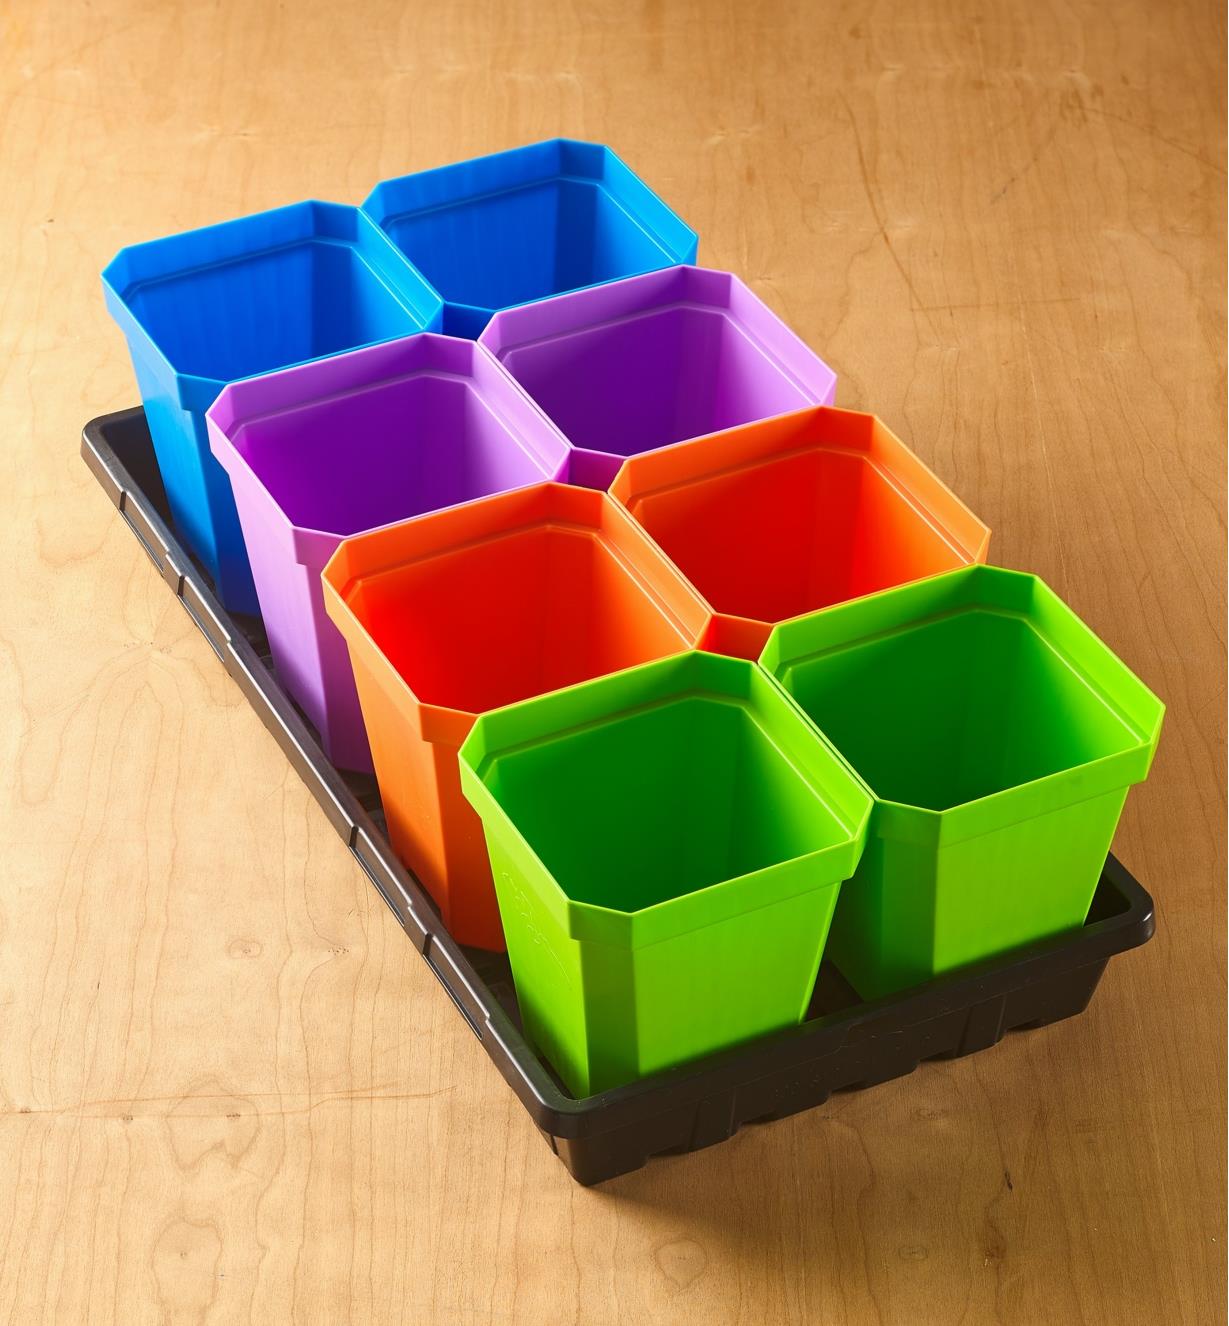 AA681 - 8 pots de 5 po, couleurs variées, et plateau